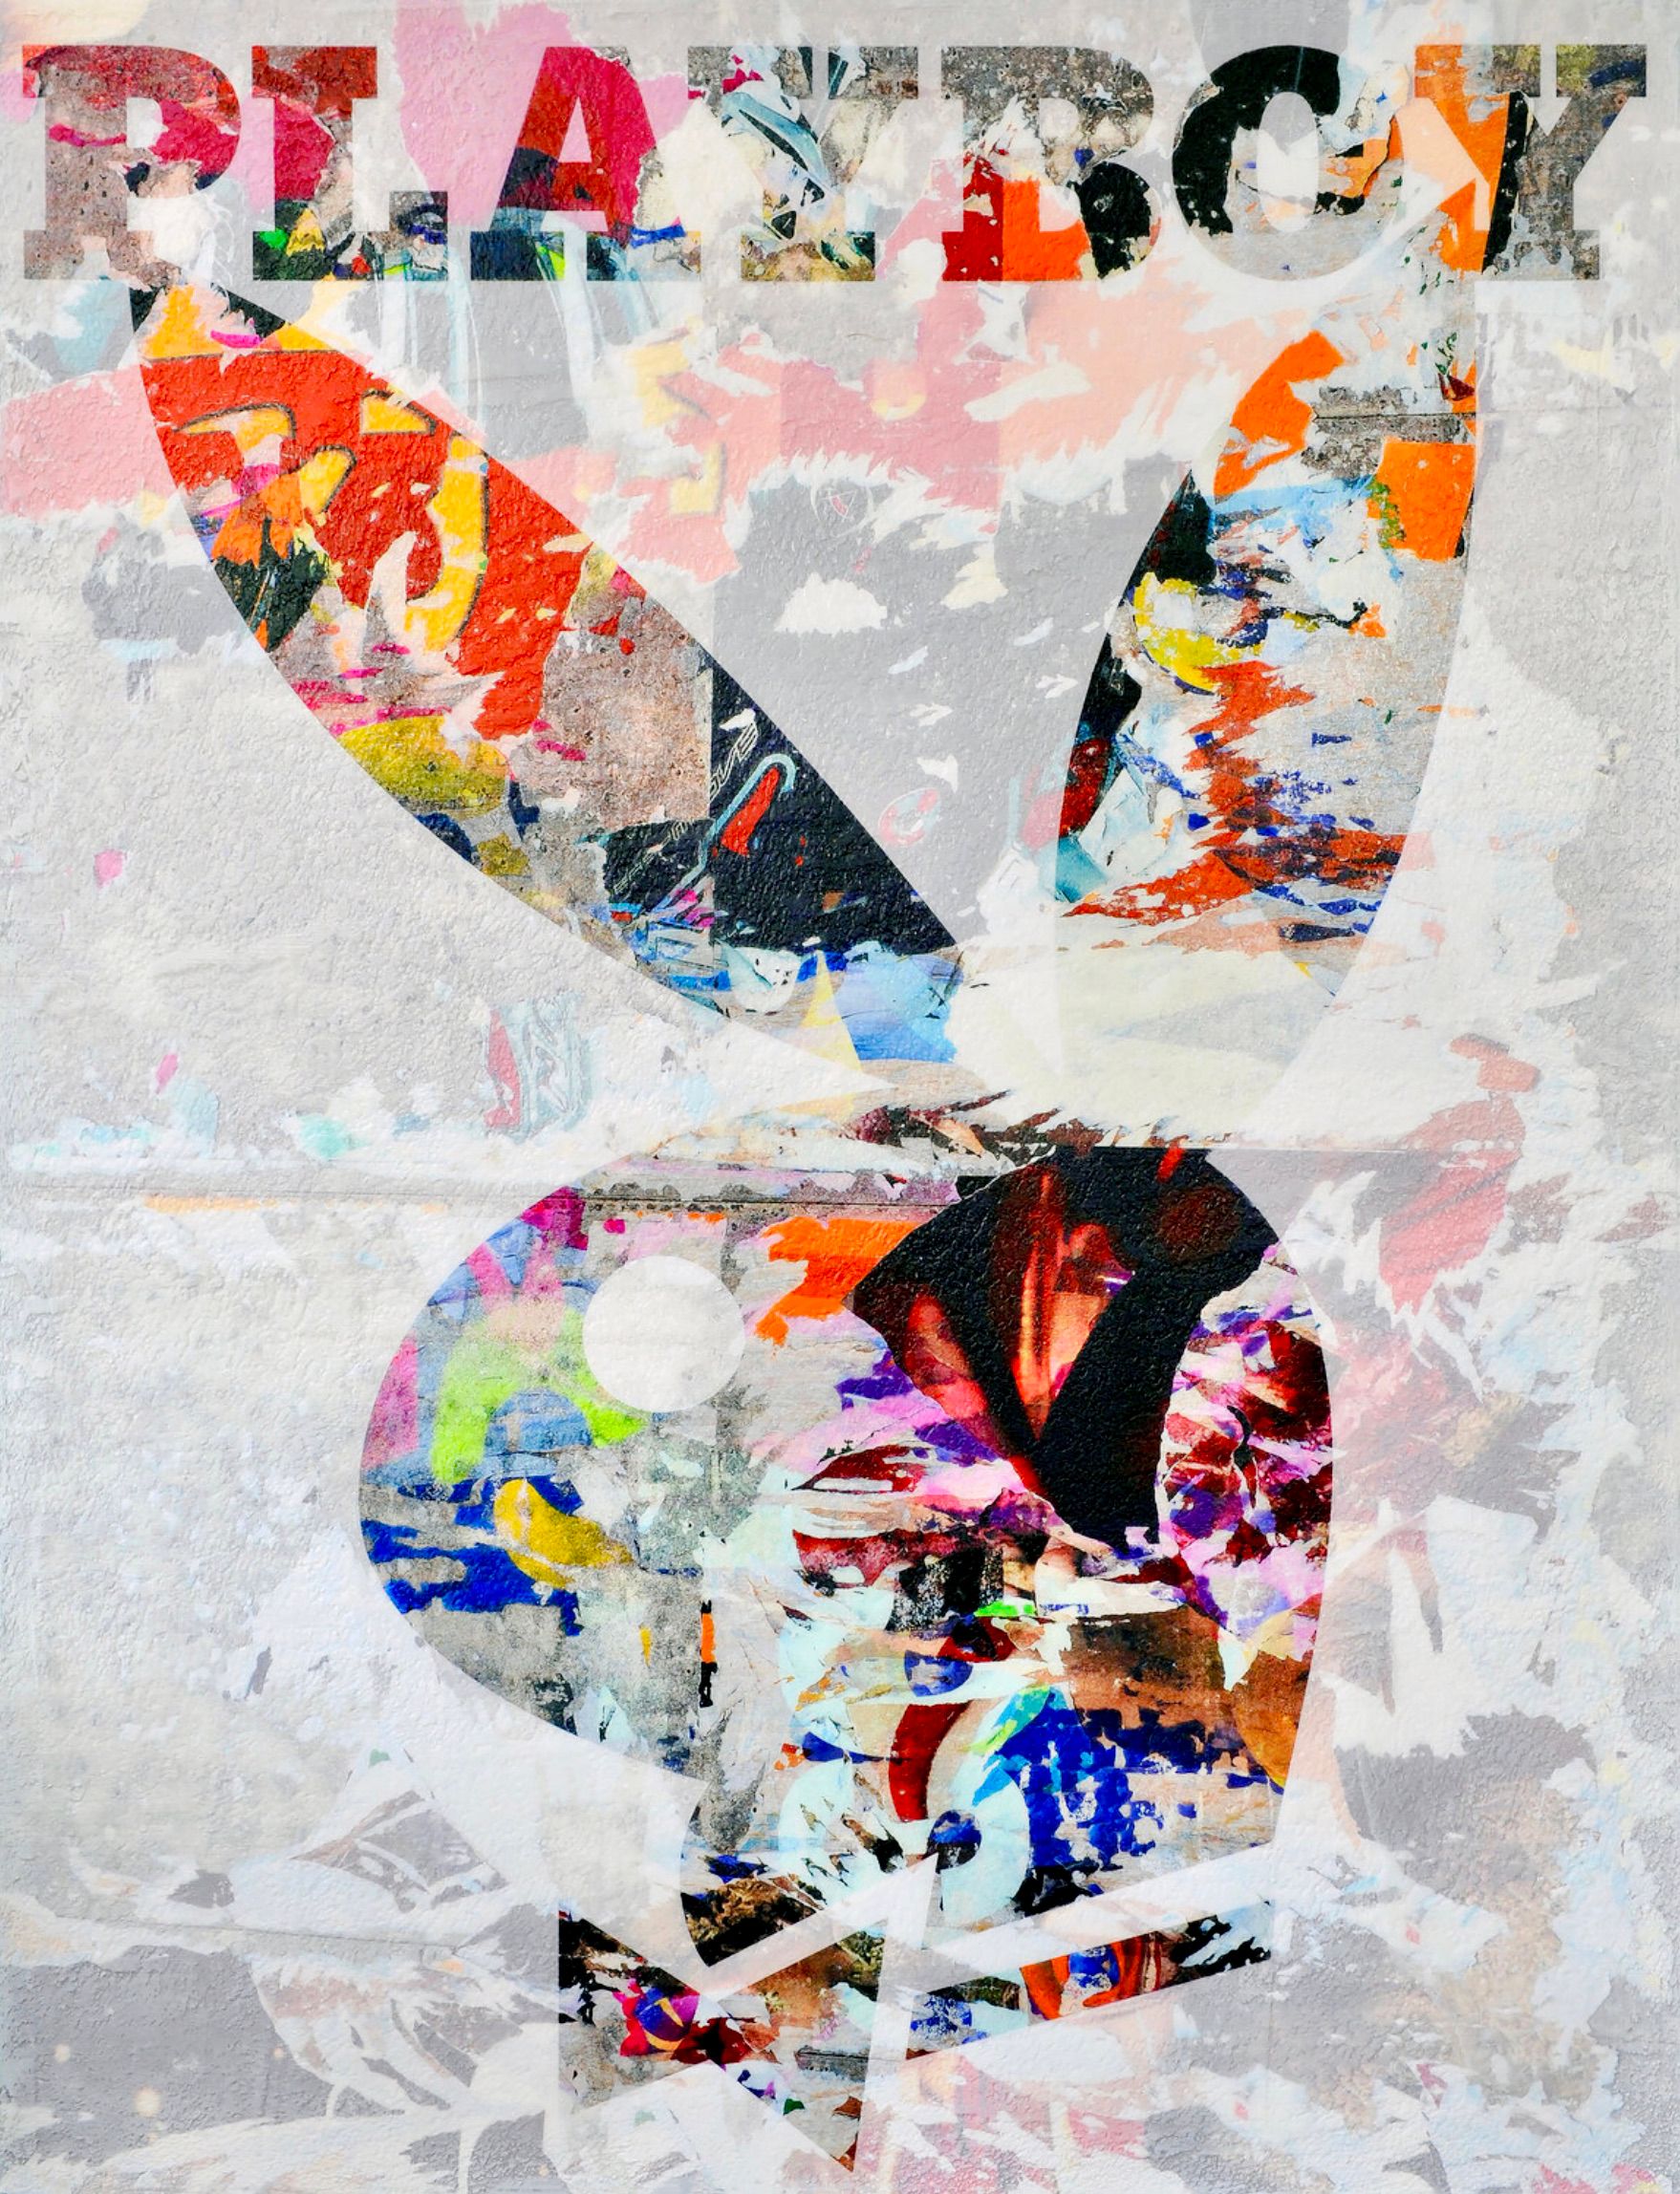 卡琳-维米尔的 "花花公子兔子 "是将照片、绘画和拼贴画以数字方式组合和处理成新的、原创的彩色街头艺术作品。